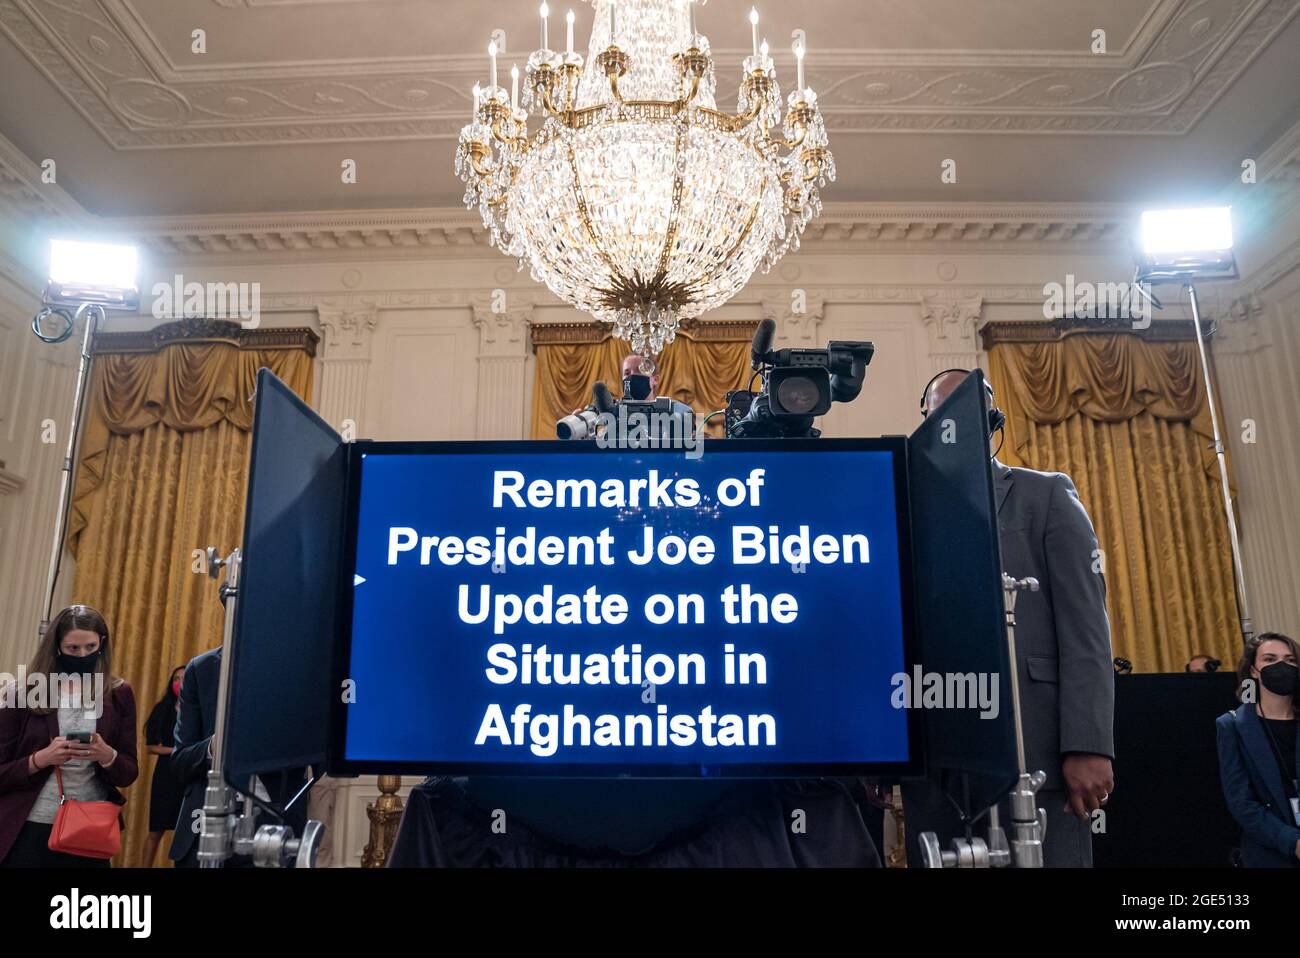 Washington, Estados Unidos. 16th de agosto de 2021. El teleprompter antes del presidente estadounidense Joe Biden hablando sobre la toma de posesión de los talibanes en Afganistán desde la sala Este de la Casa Blanca en Washington, Washington, DC el lunes, 16 de agosto de 2021. Recientemente, expertos y funcionarios se han visto sorprendidos por la rapidez con que los talibanes capturaban territorio en su camino a Kabul. Foto de Ken Cedeno/UPI Crédito: UPI/Alamy Live News Foto de stock